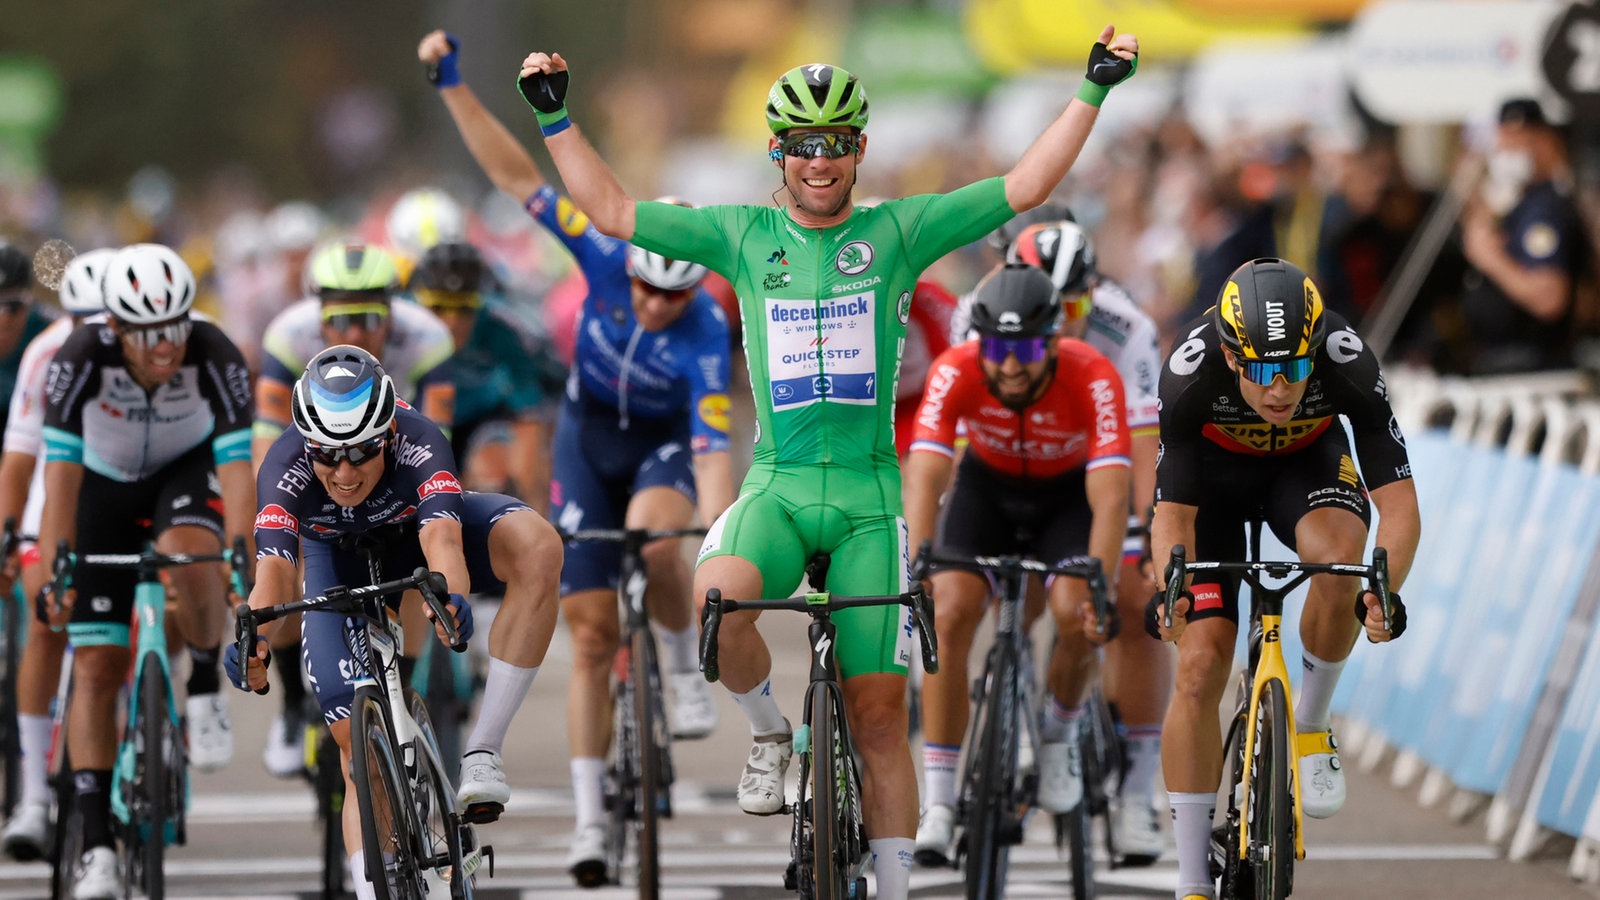 Cycling, Tour de France: Cavendish wins the sprint race in Valence - Tour de France - Cycling